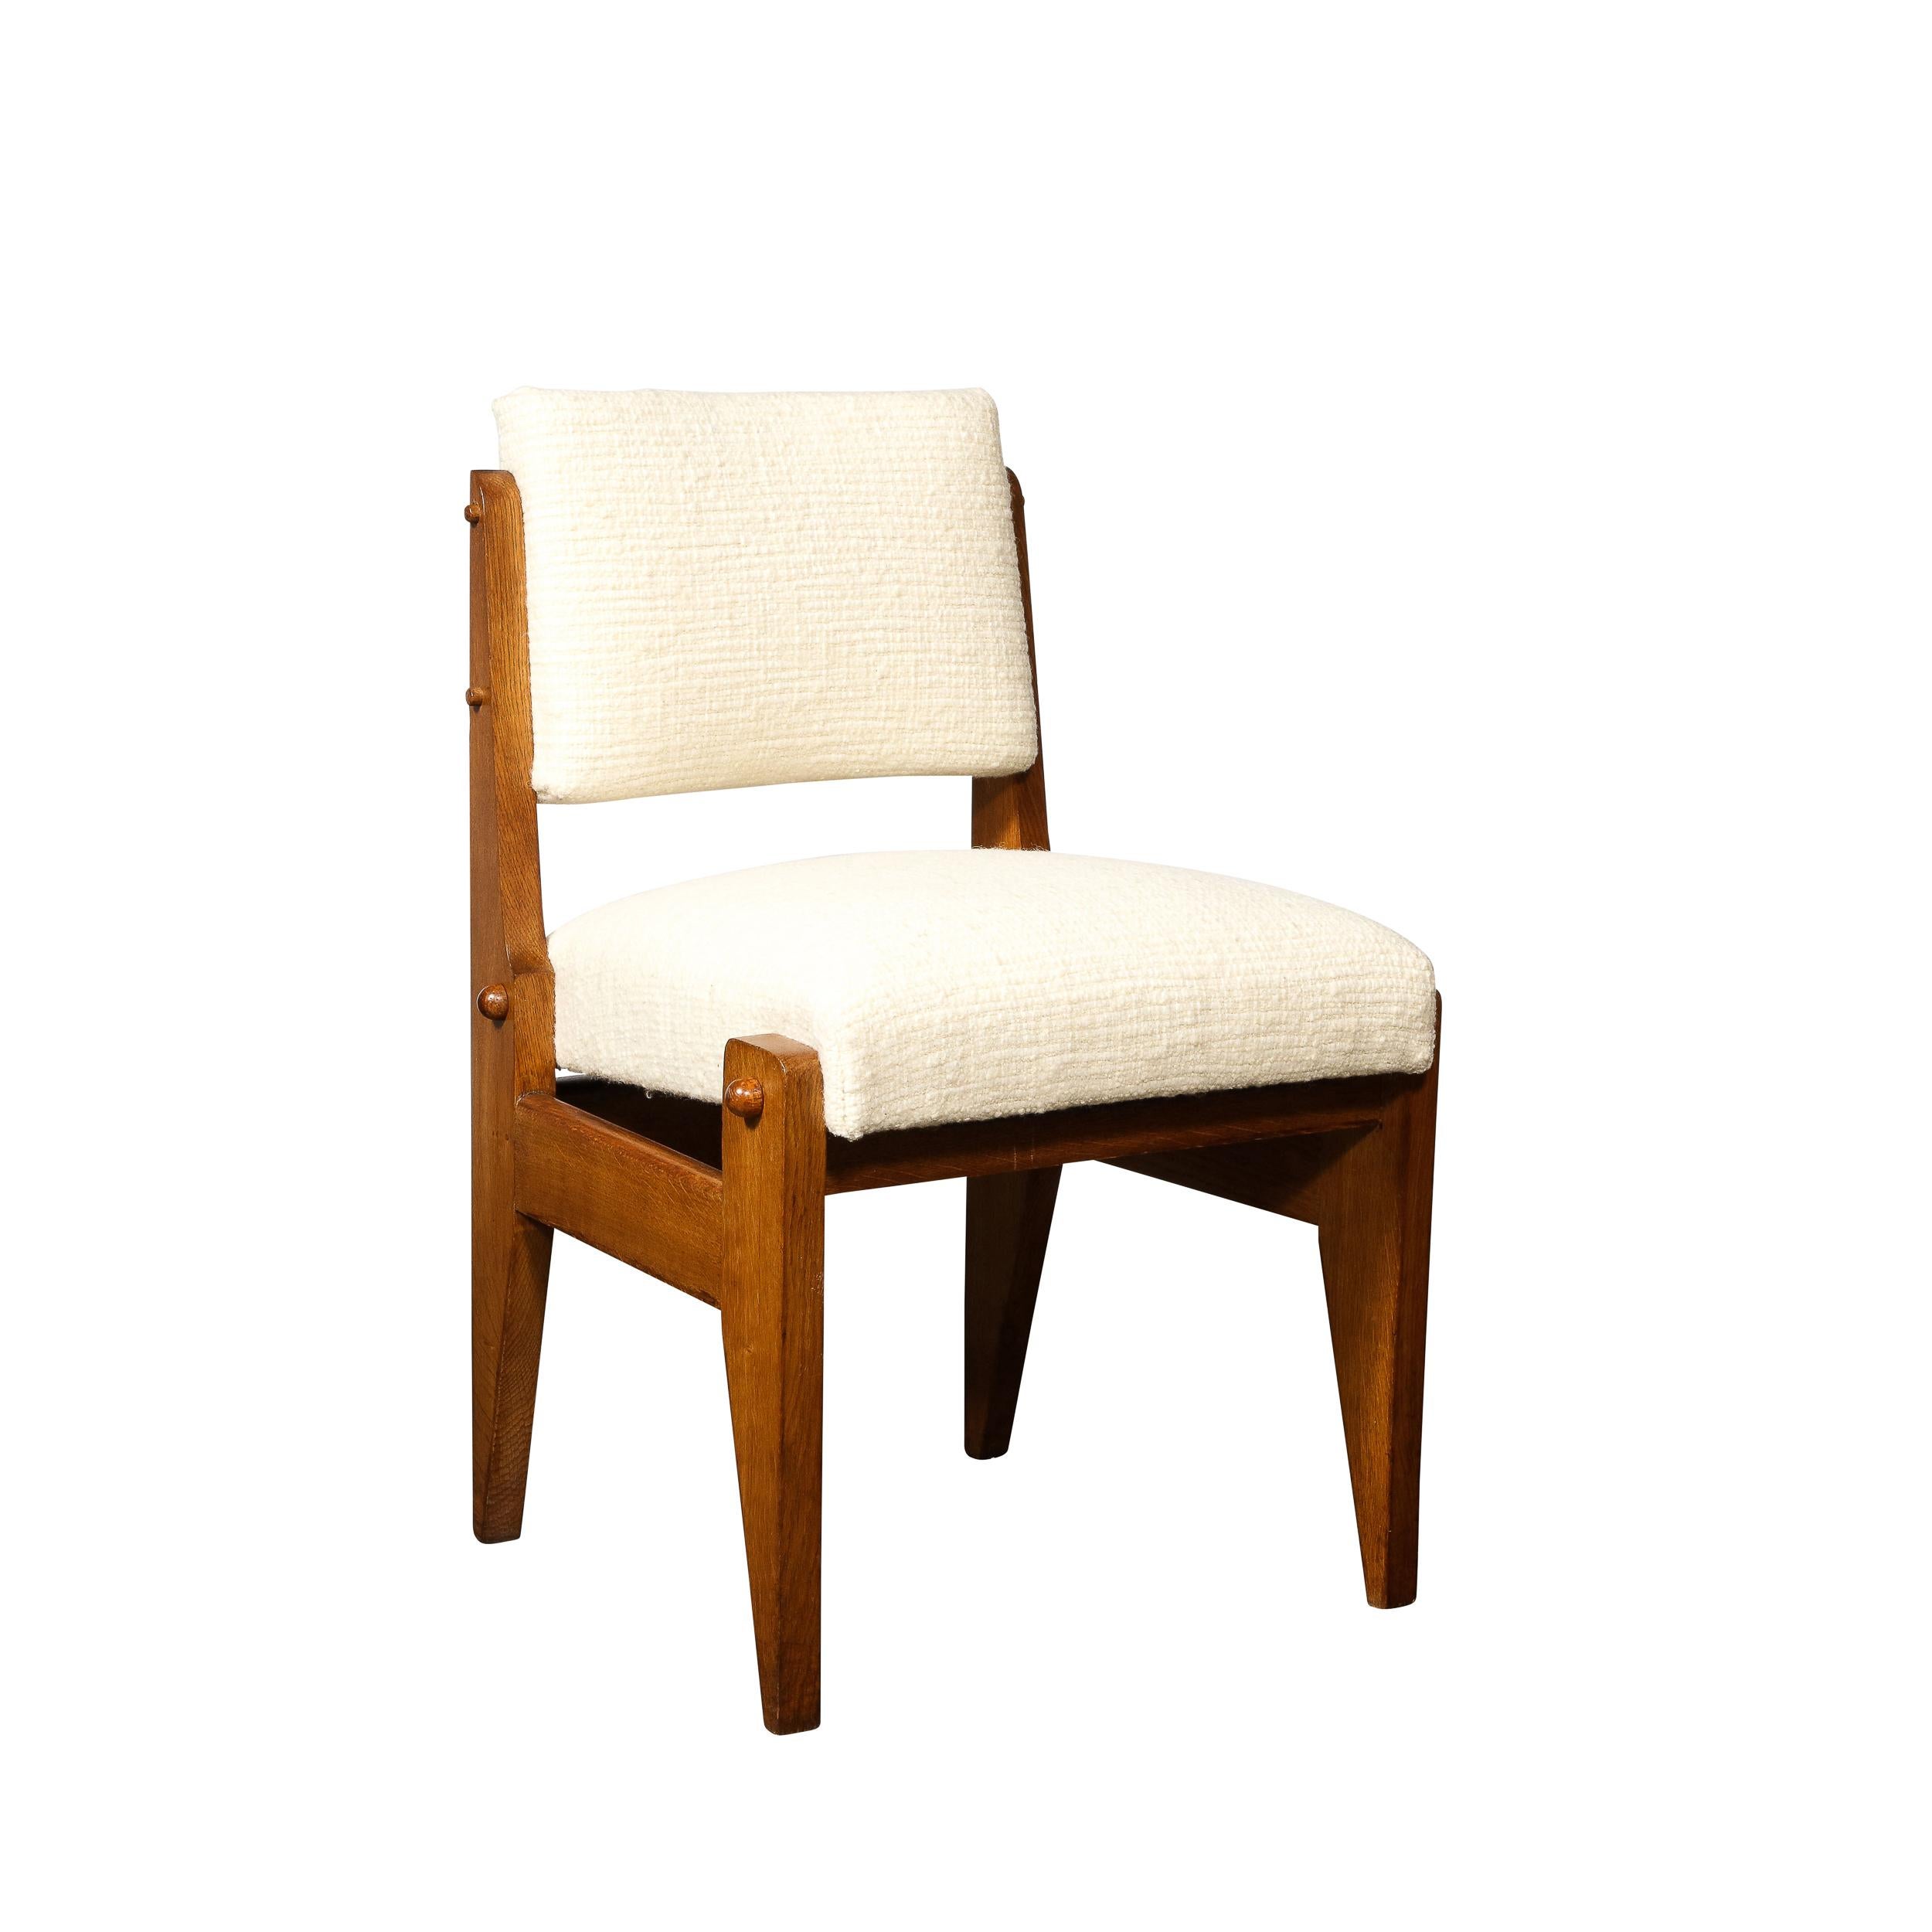 Dieses grafische und raffinierte Set von vier Stühlen wurde um 1950 in Frankreich von den geschätzten Robert Guillerme & Jacques Chambron realisiert. Das Duo Guillerme und Chambron sowie ihr Unternehmen Votre Maison sind ein Meilenstein der